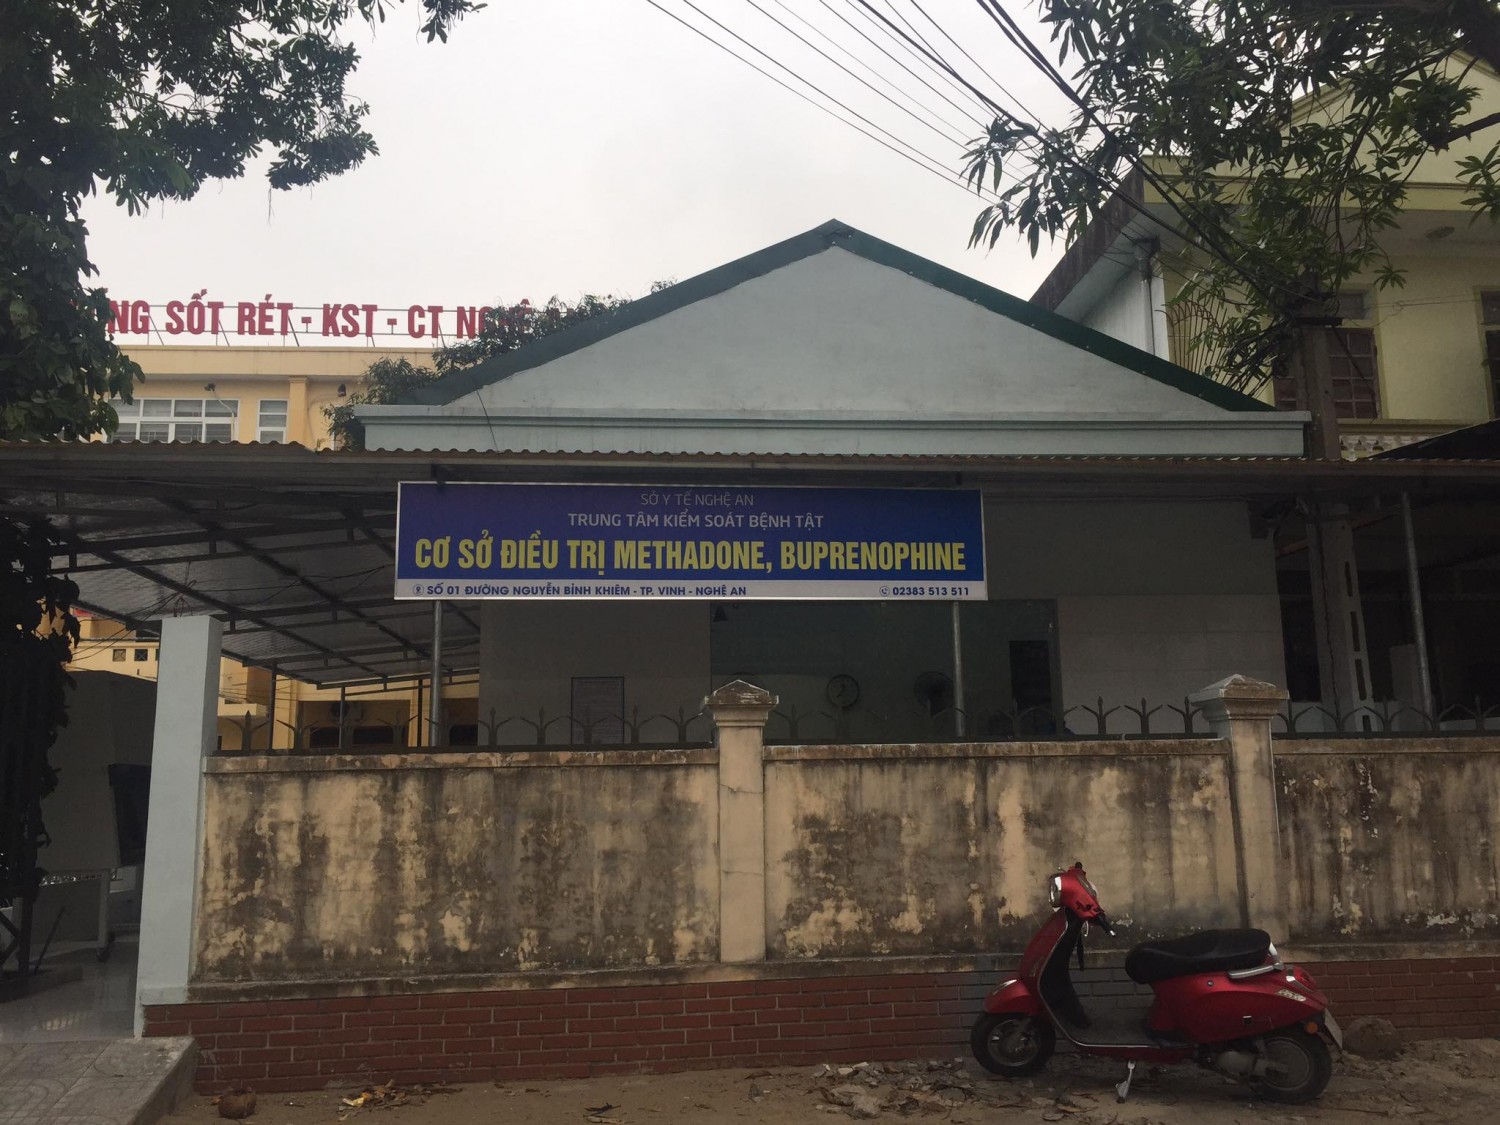 Cơ sở điều trị Methadone Trung tâm kiểm soát bệnh tật tỉnh Nghệ An